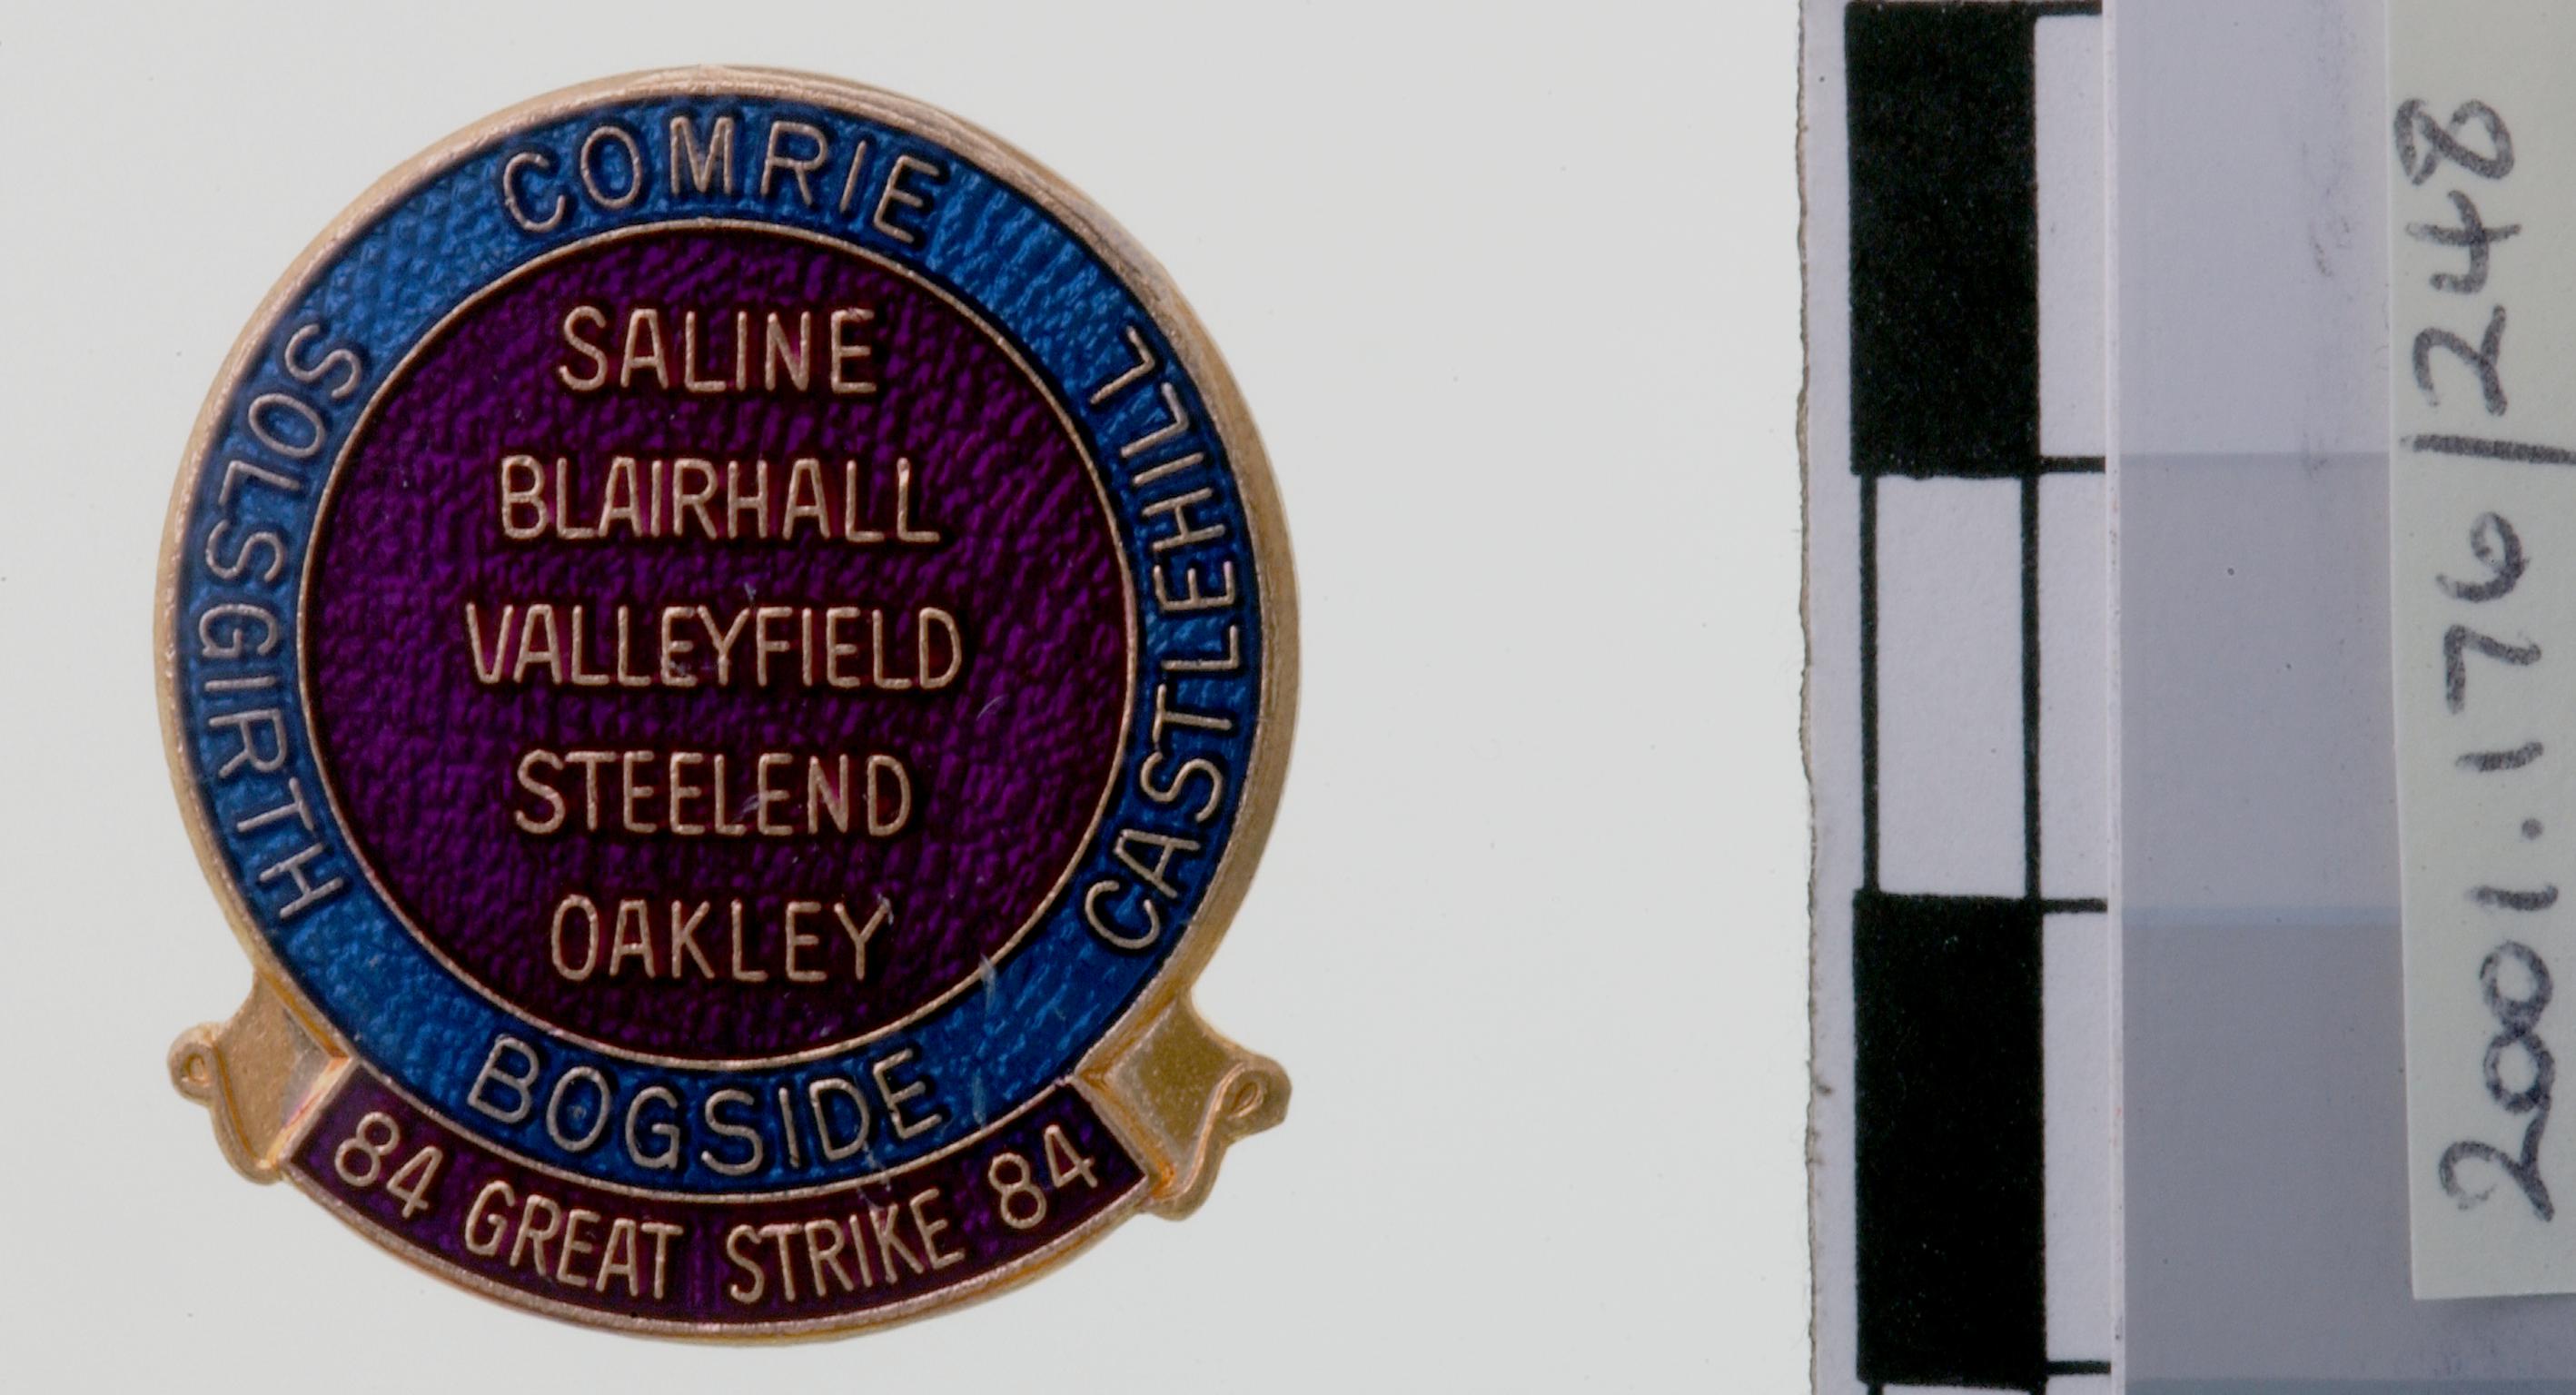 N.U.M. Scottish Area, badge